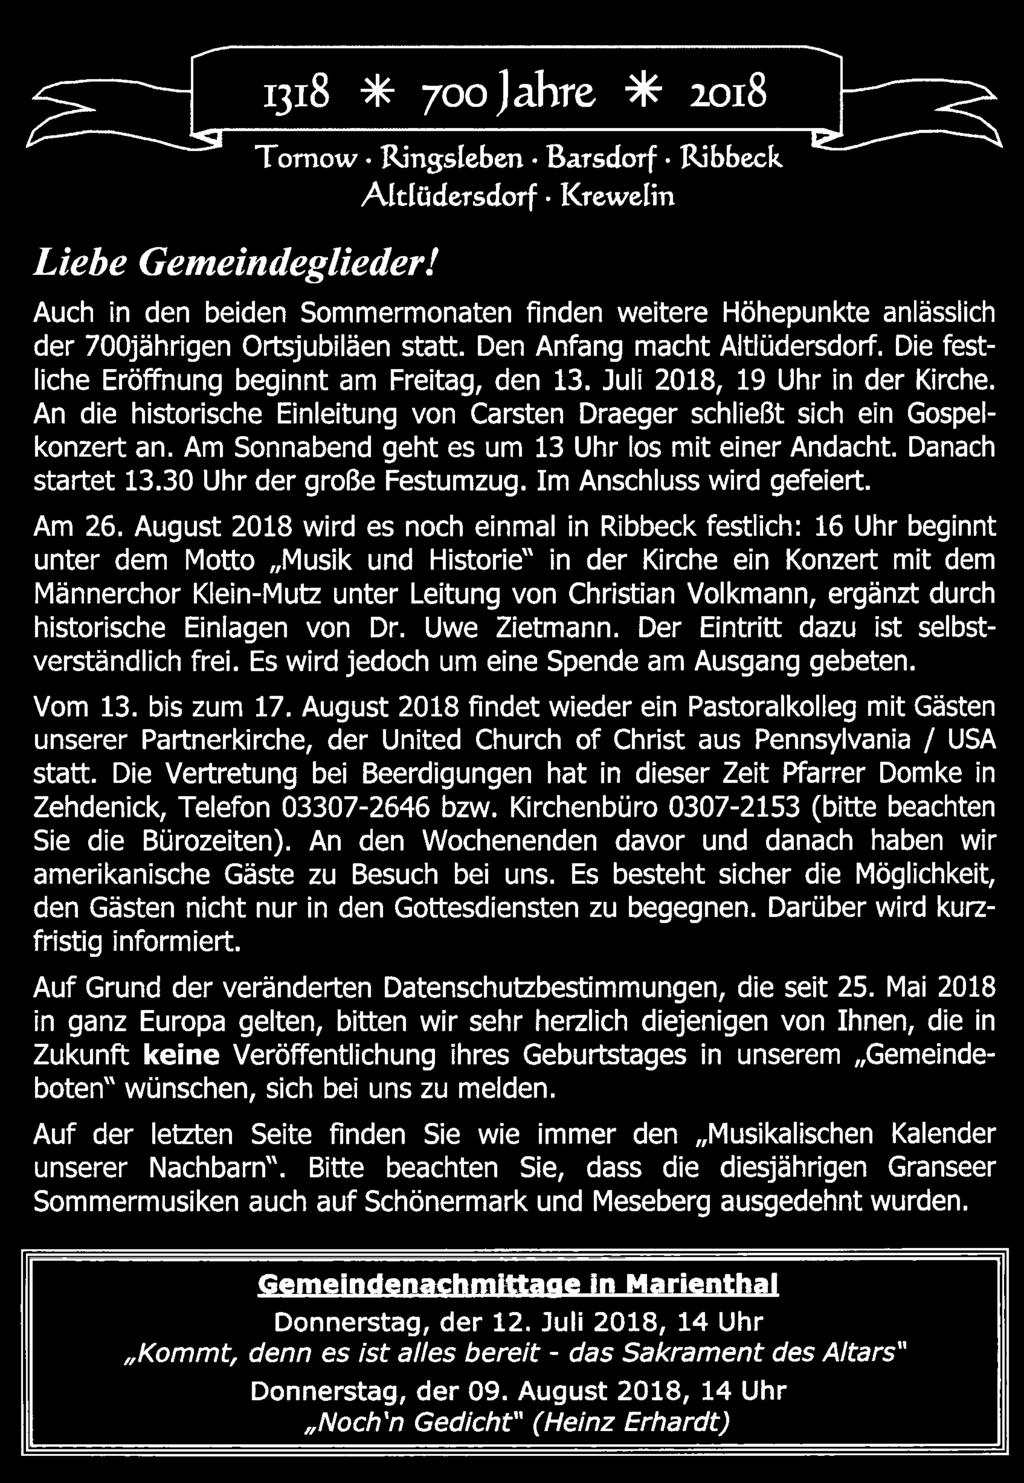 August 2018 wird es noch einmal in Ribbeck festlich: 16 Uhr beginnt unter dem Motto "Musik und Historie" in der Kirche ein Konzert mit dem Männerchor Klein-Mutz unter Leitung von Christian Volkmann,